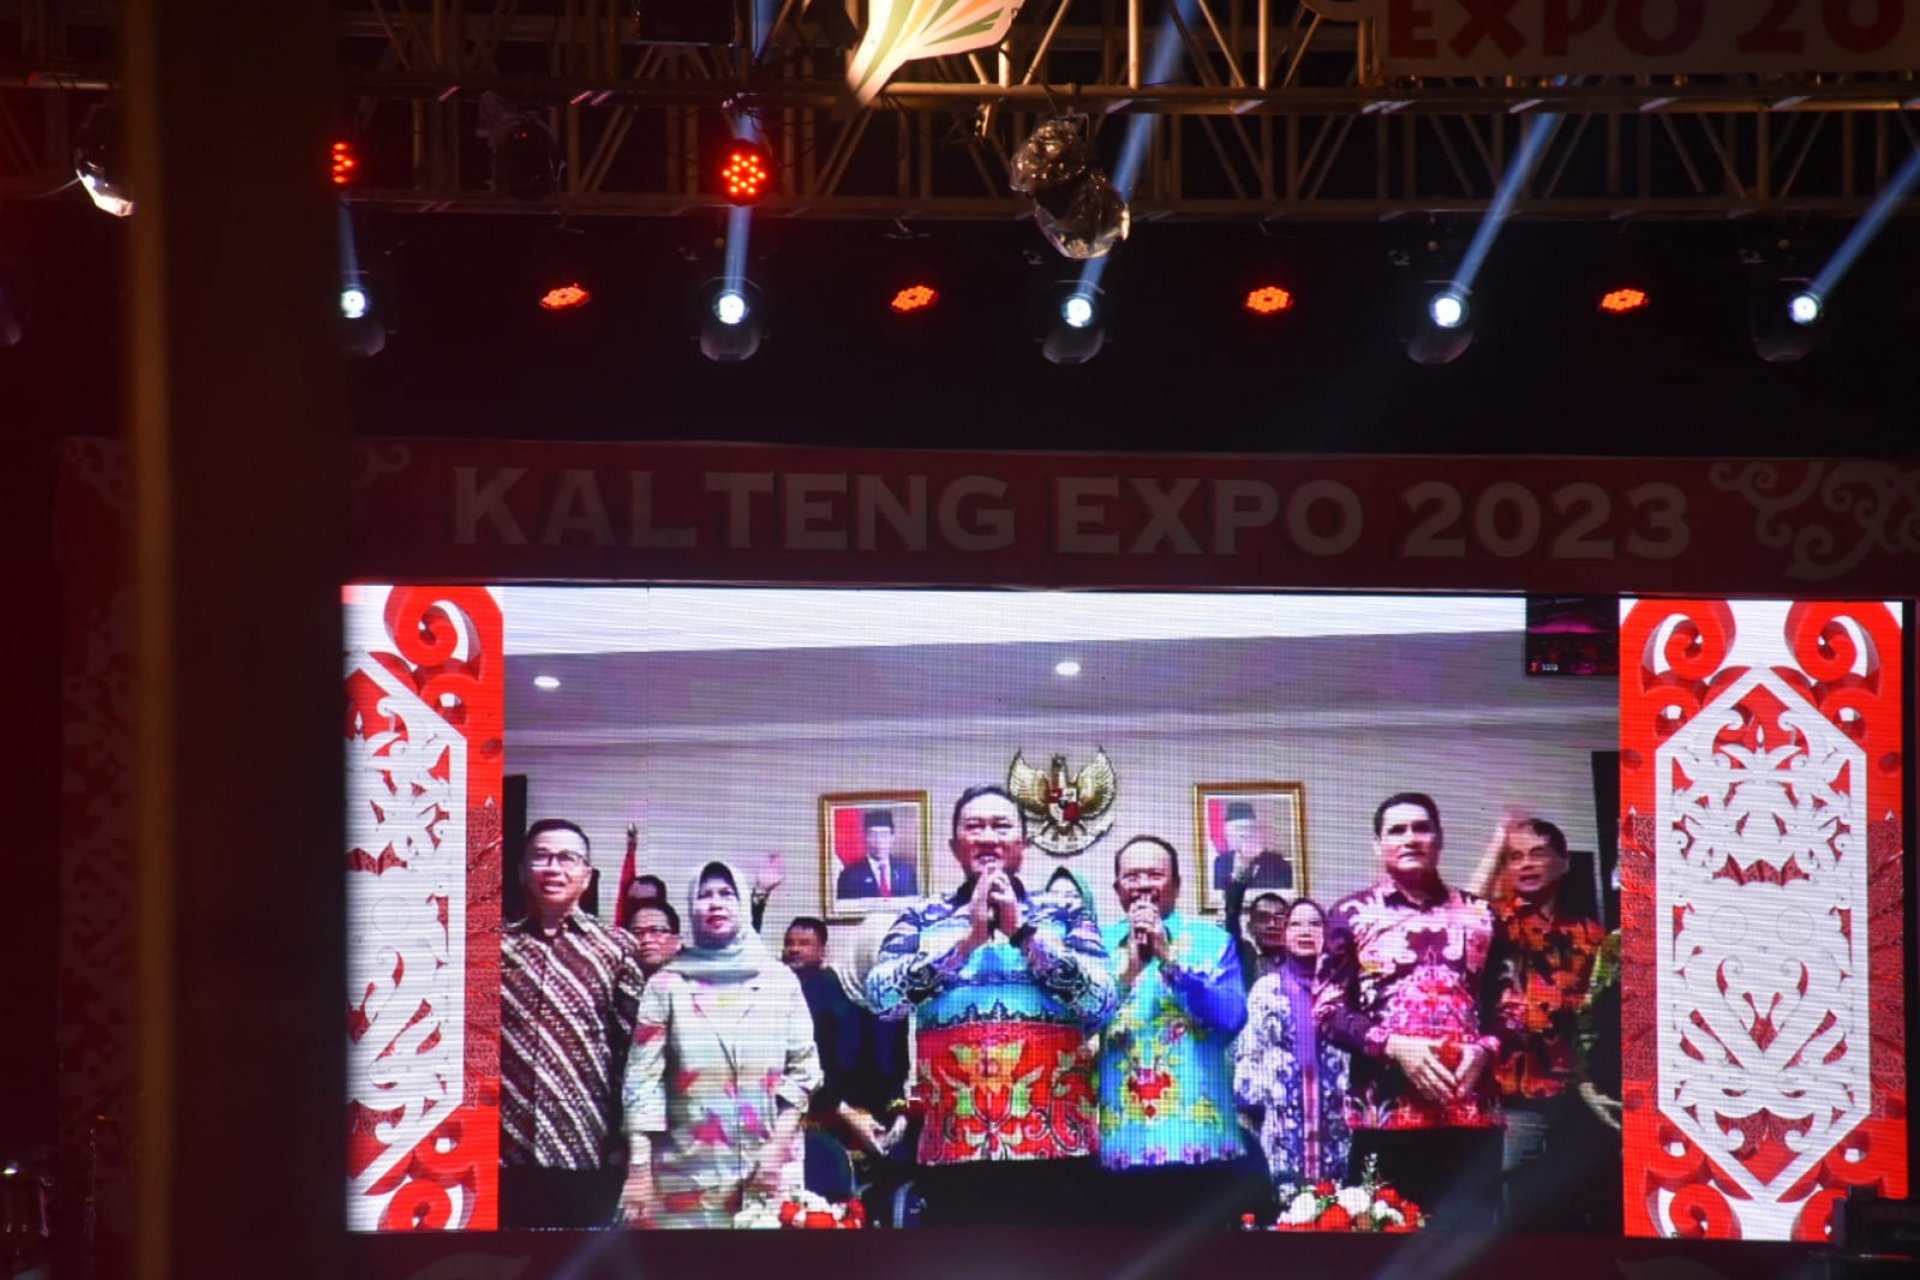 Wagub Resmi Buka Kalteng Expo 2023